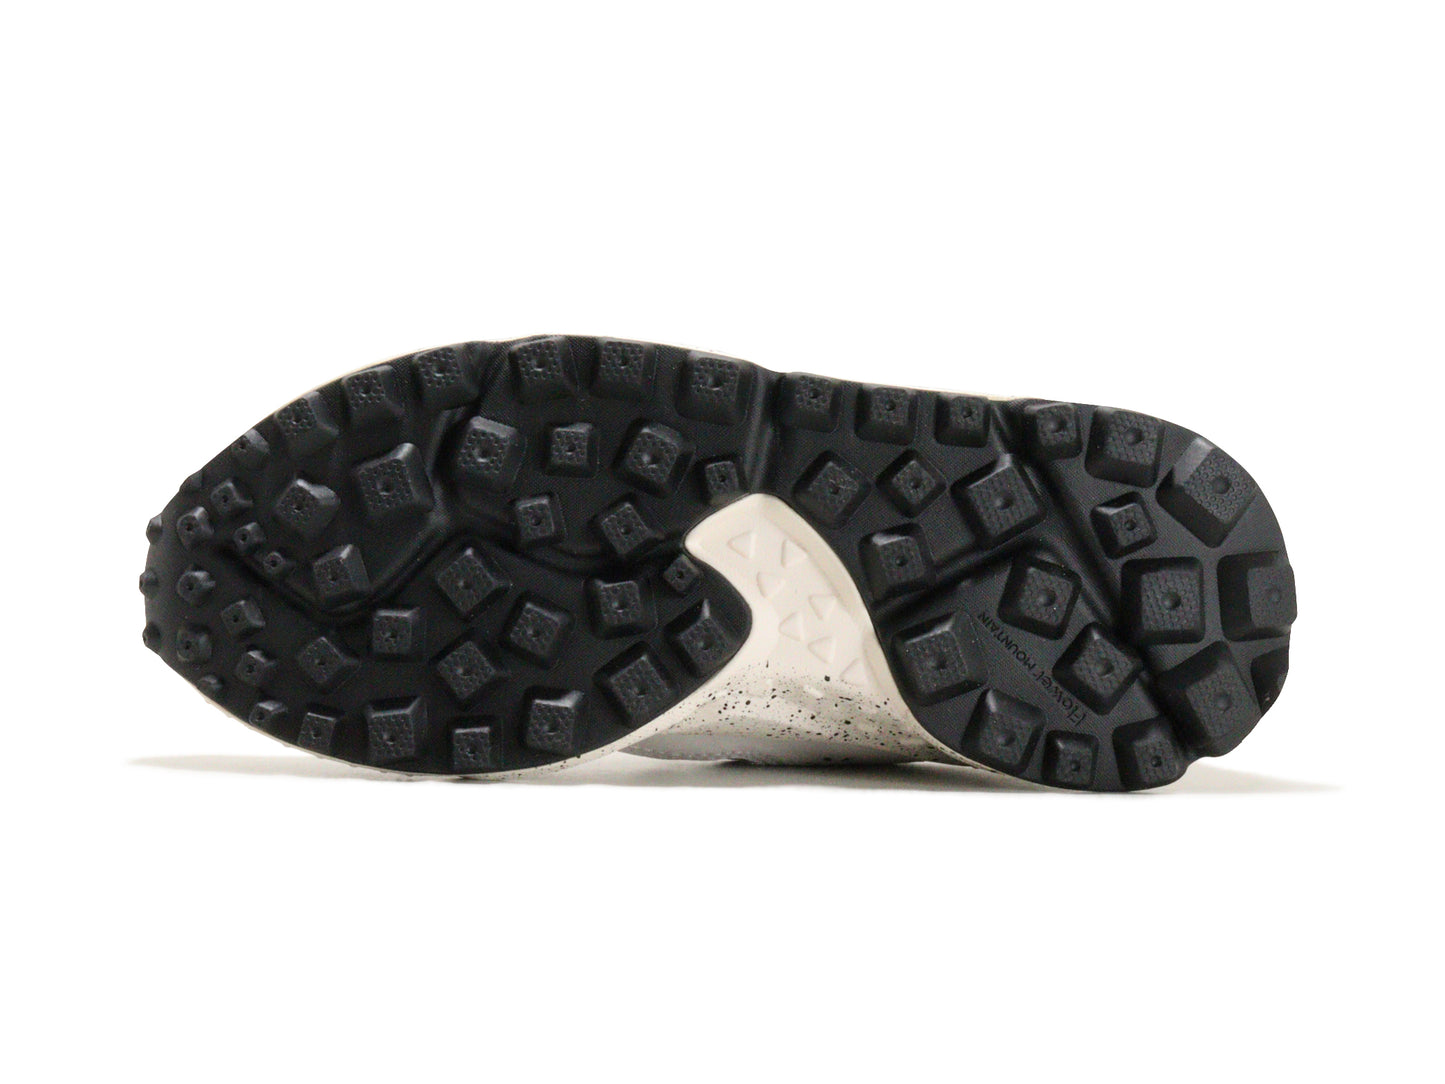 Flower MOUNTAINのスニーカー「FM36006」の靴底の商品画像